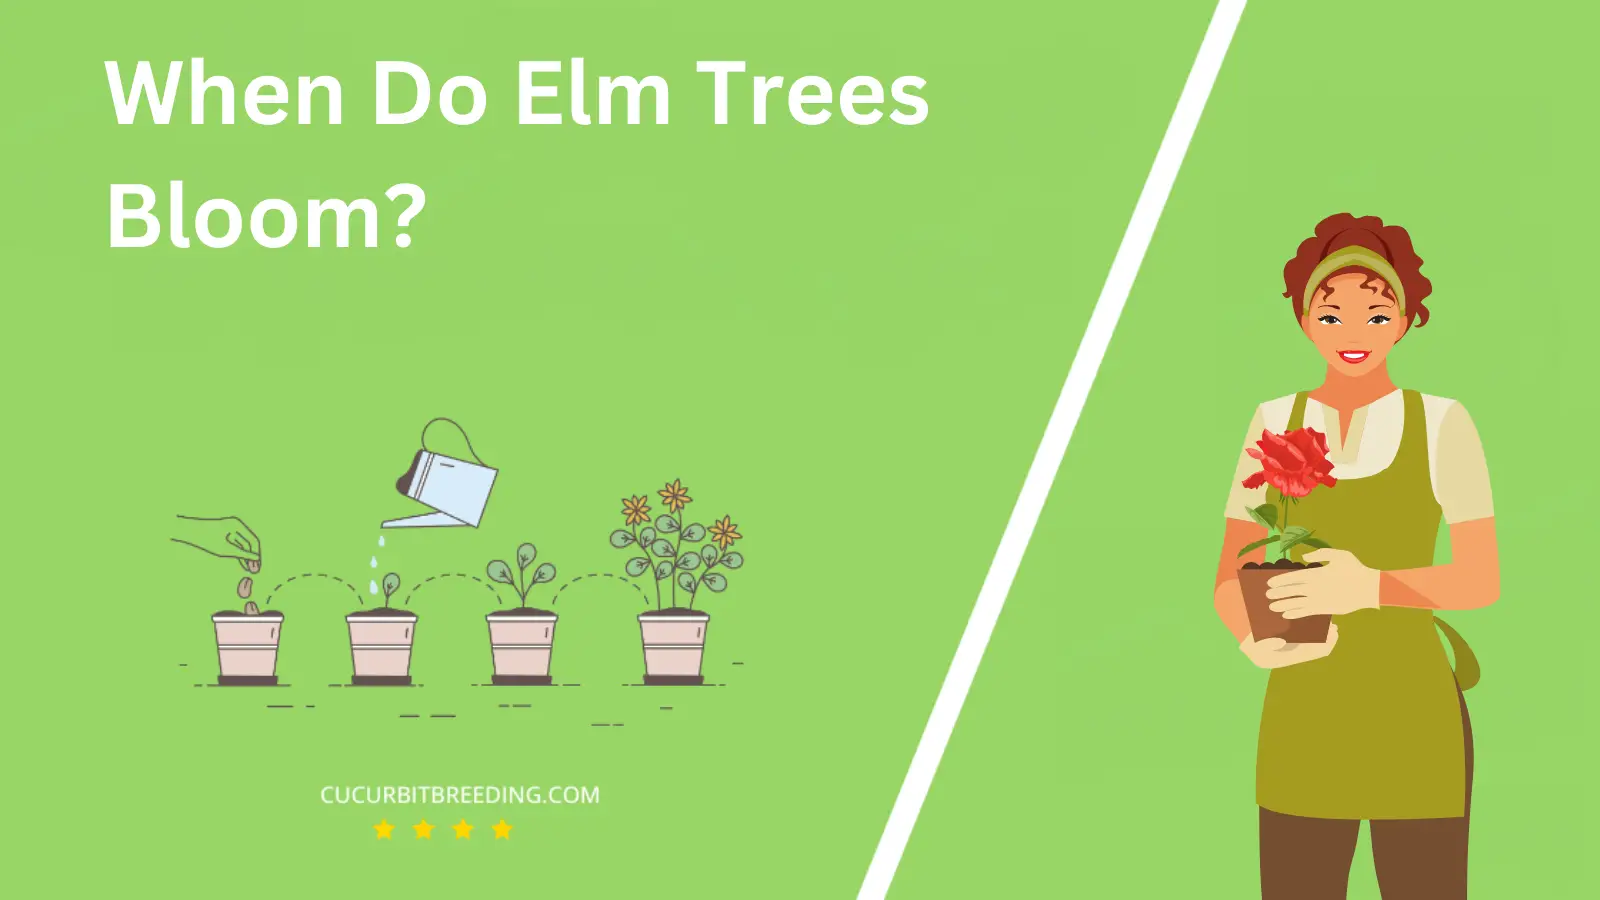 When Do Elm Trees Bloom?